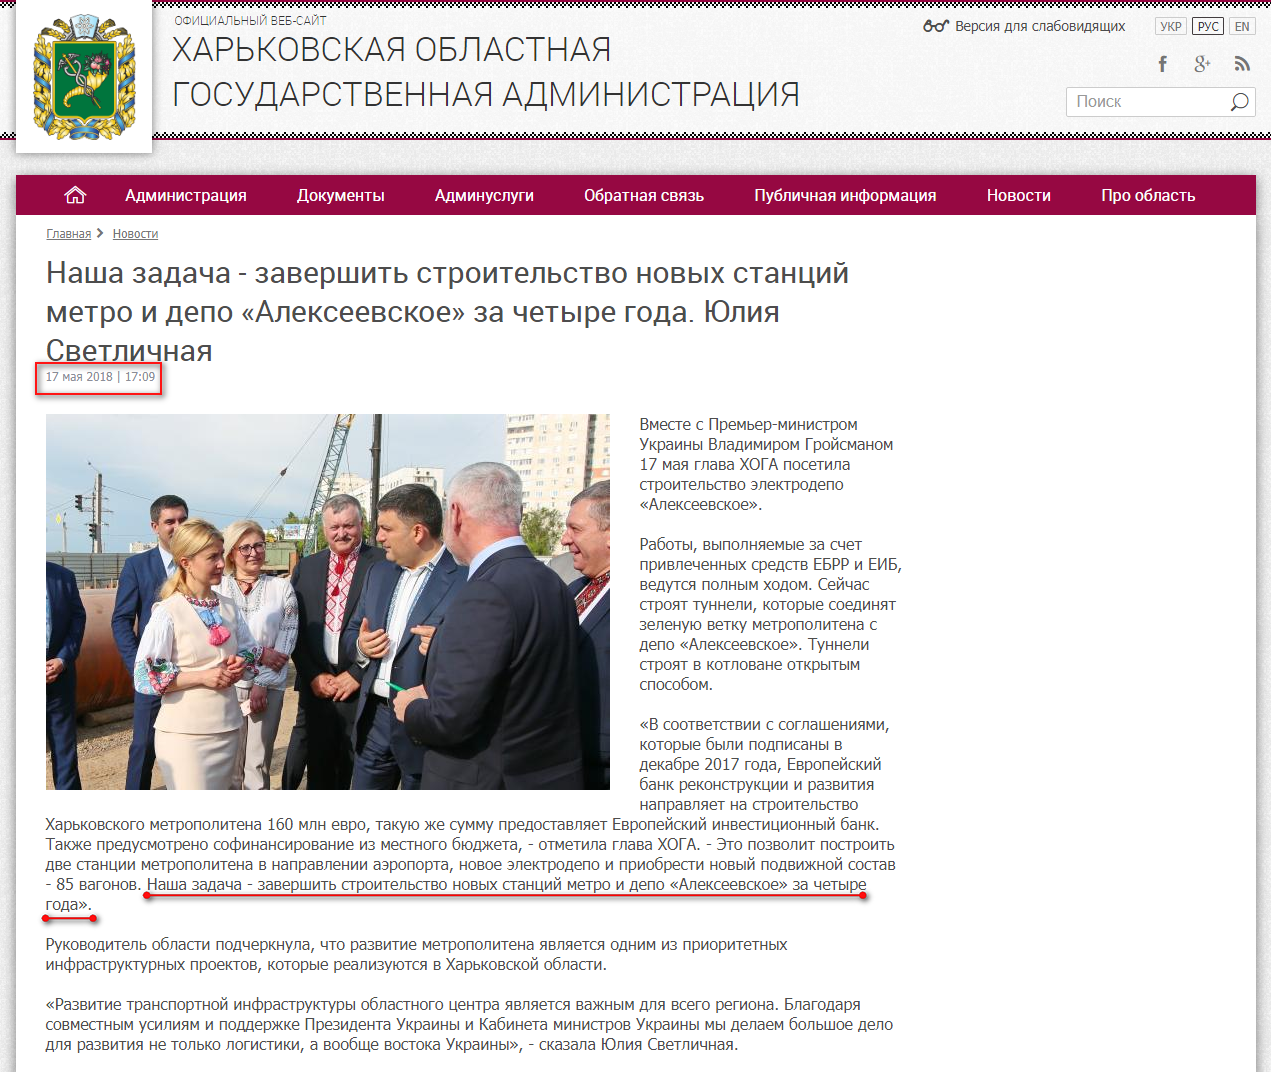 http://kharkivoda.gov.ua/ru/news/92904